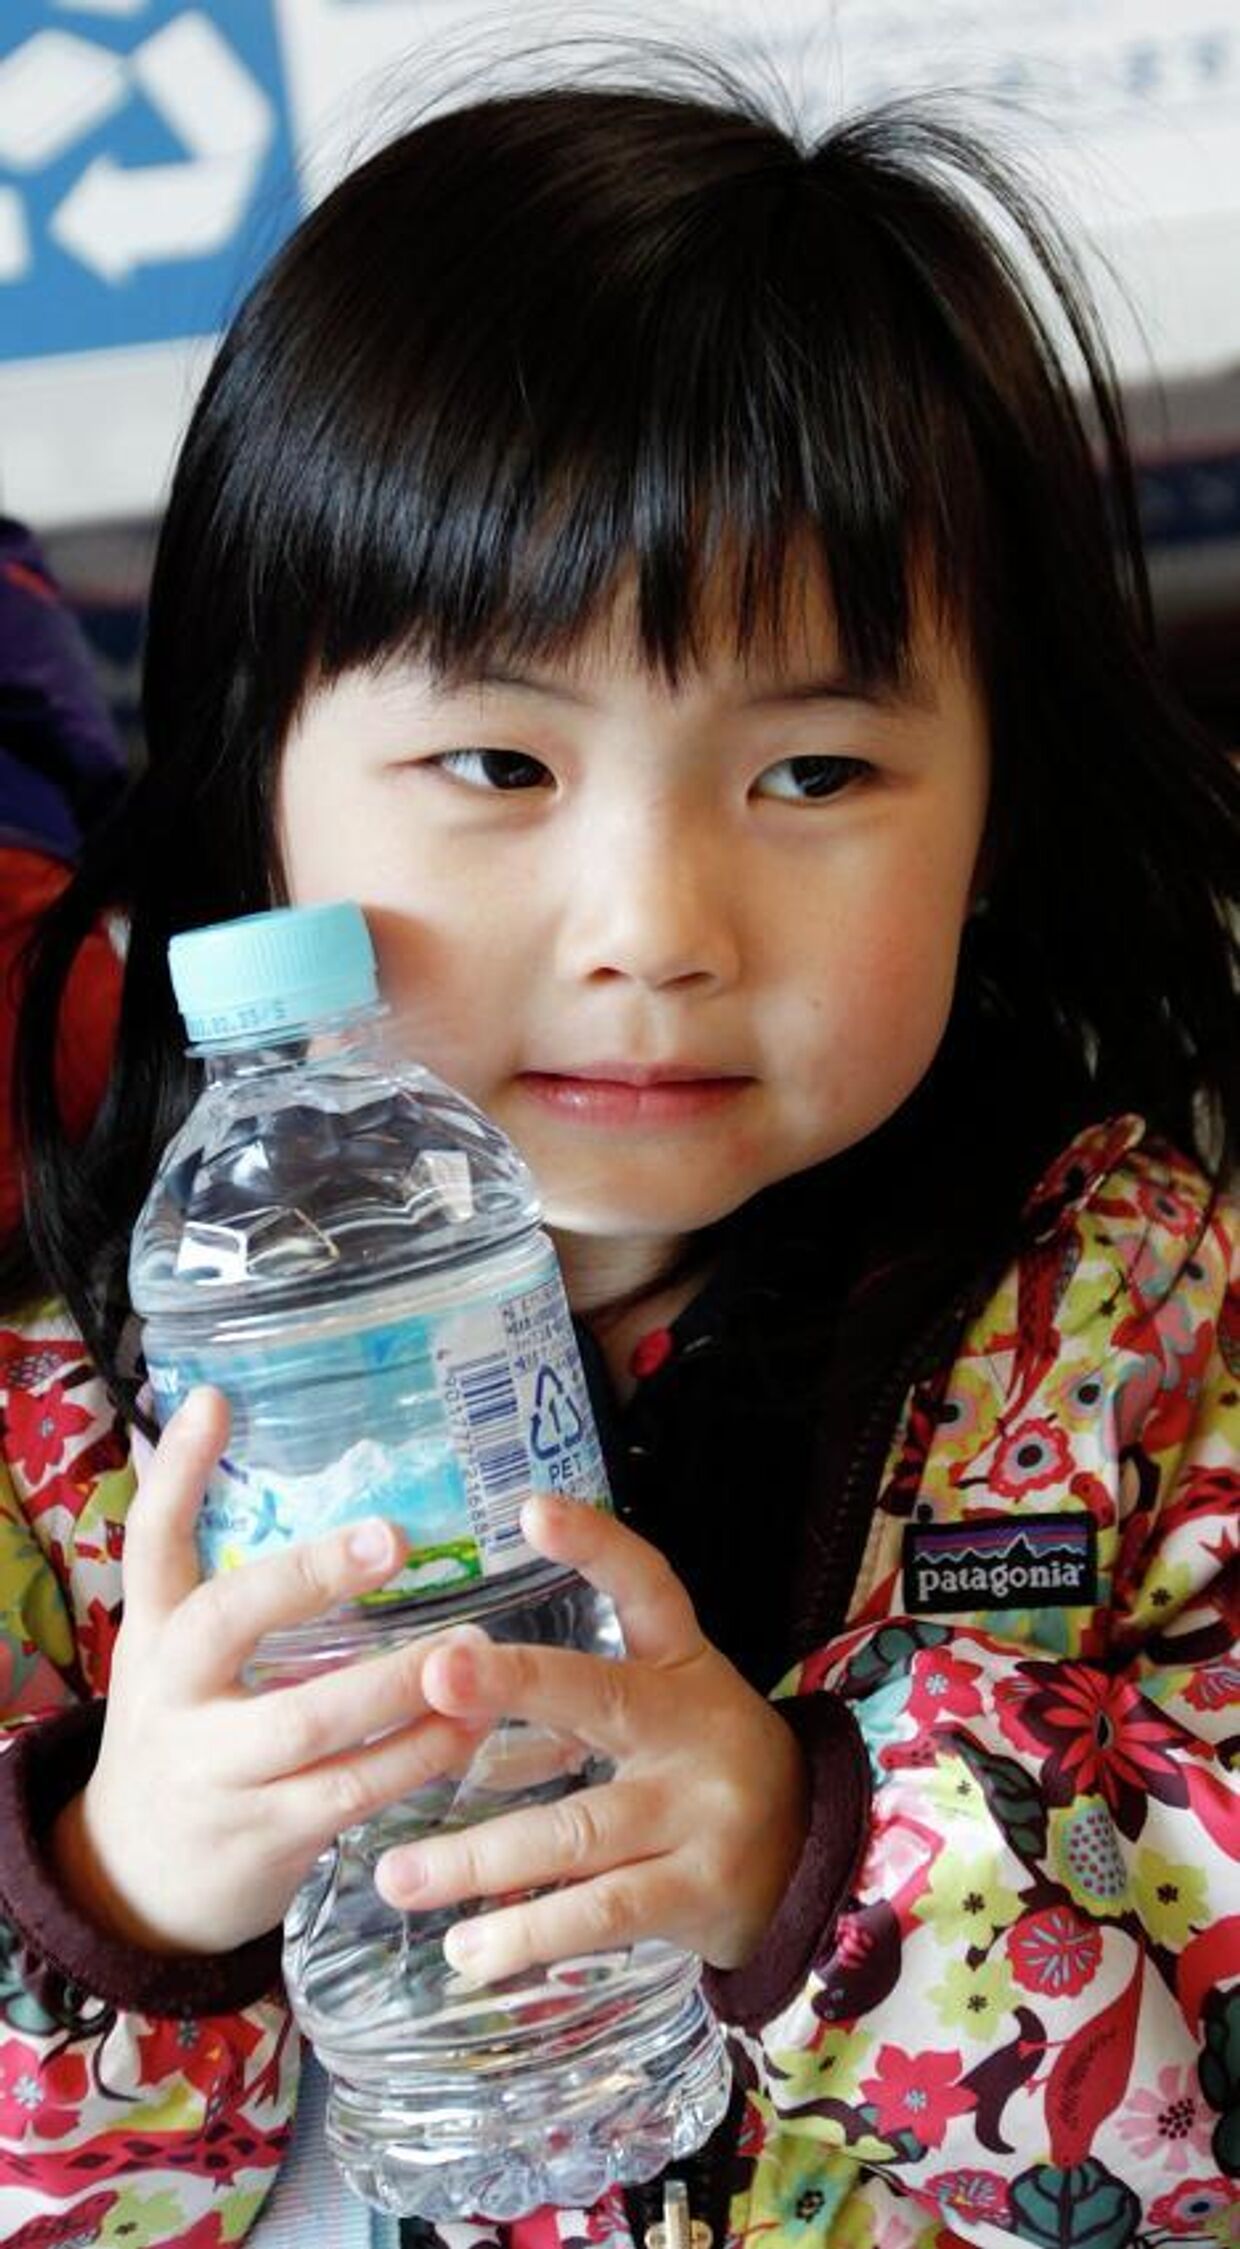 Ажиотаж вокруг питьевой воды наступил в Токио, жители буквально сметают бутилированную воду с прилавков магазинов